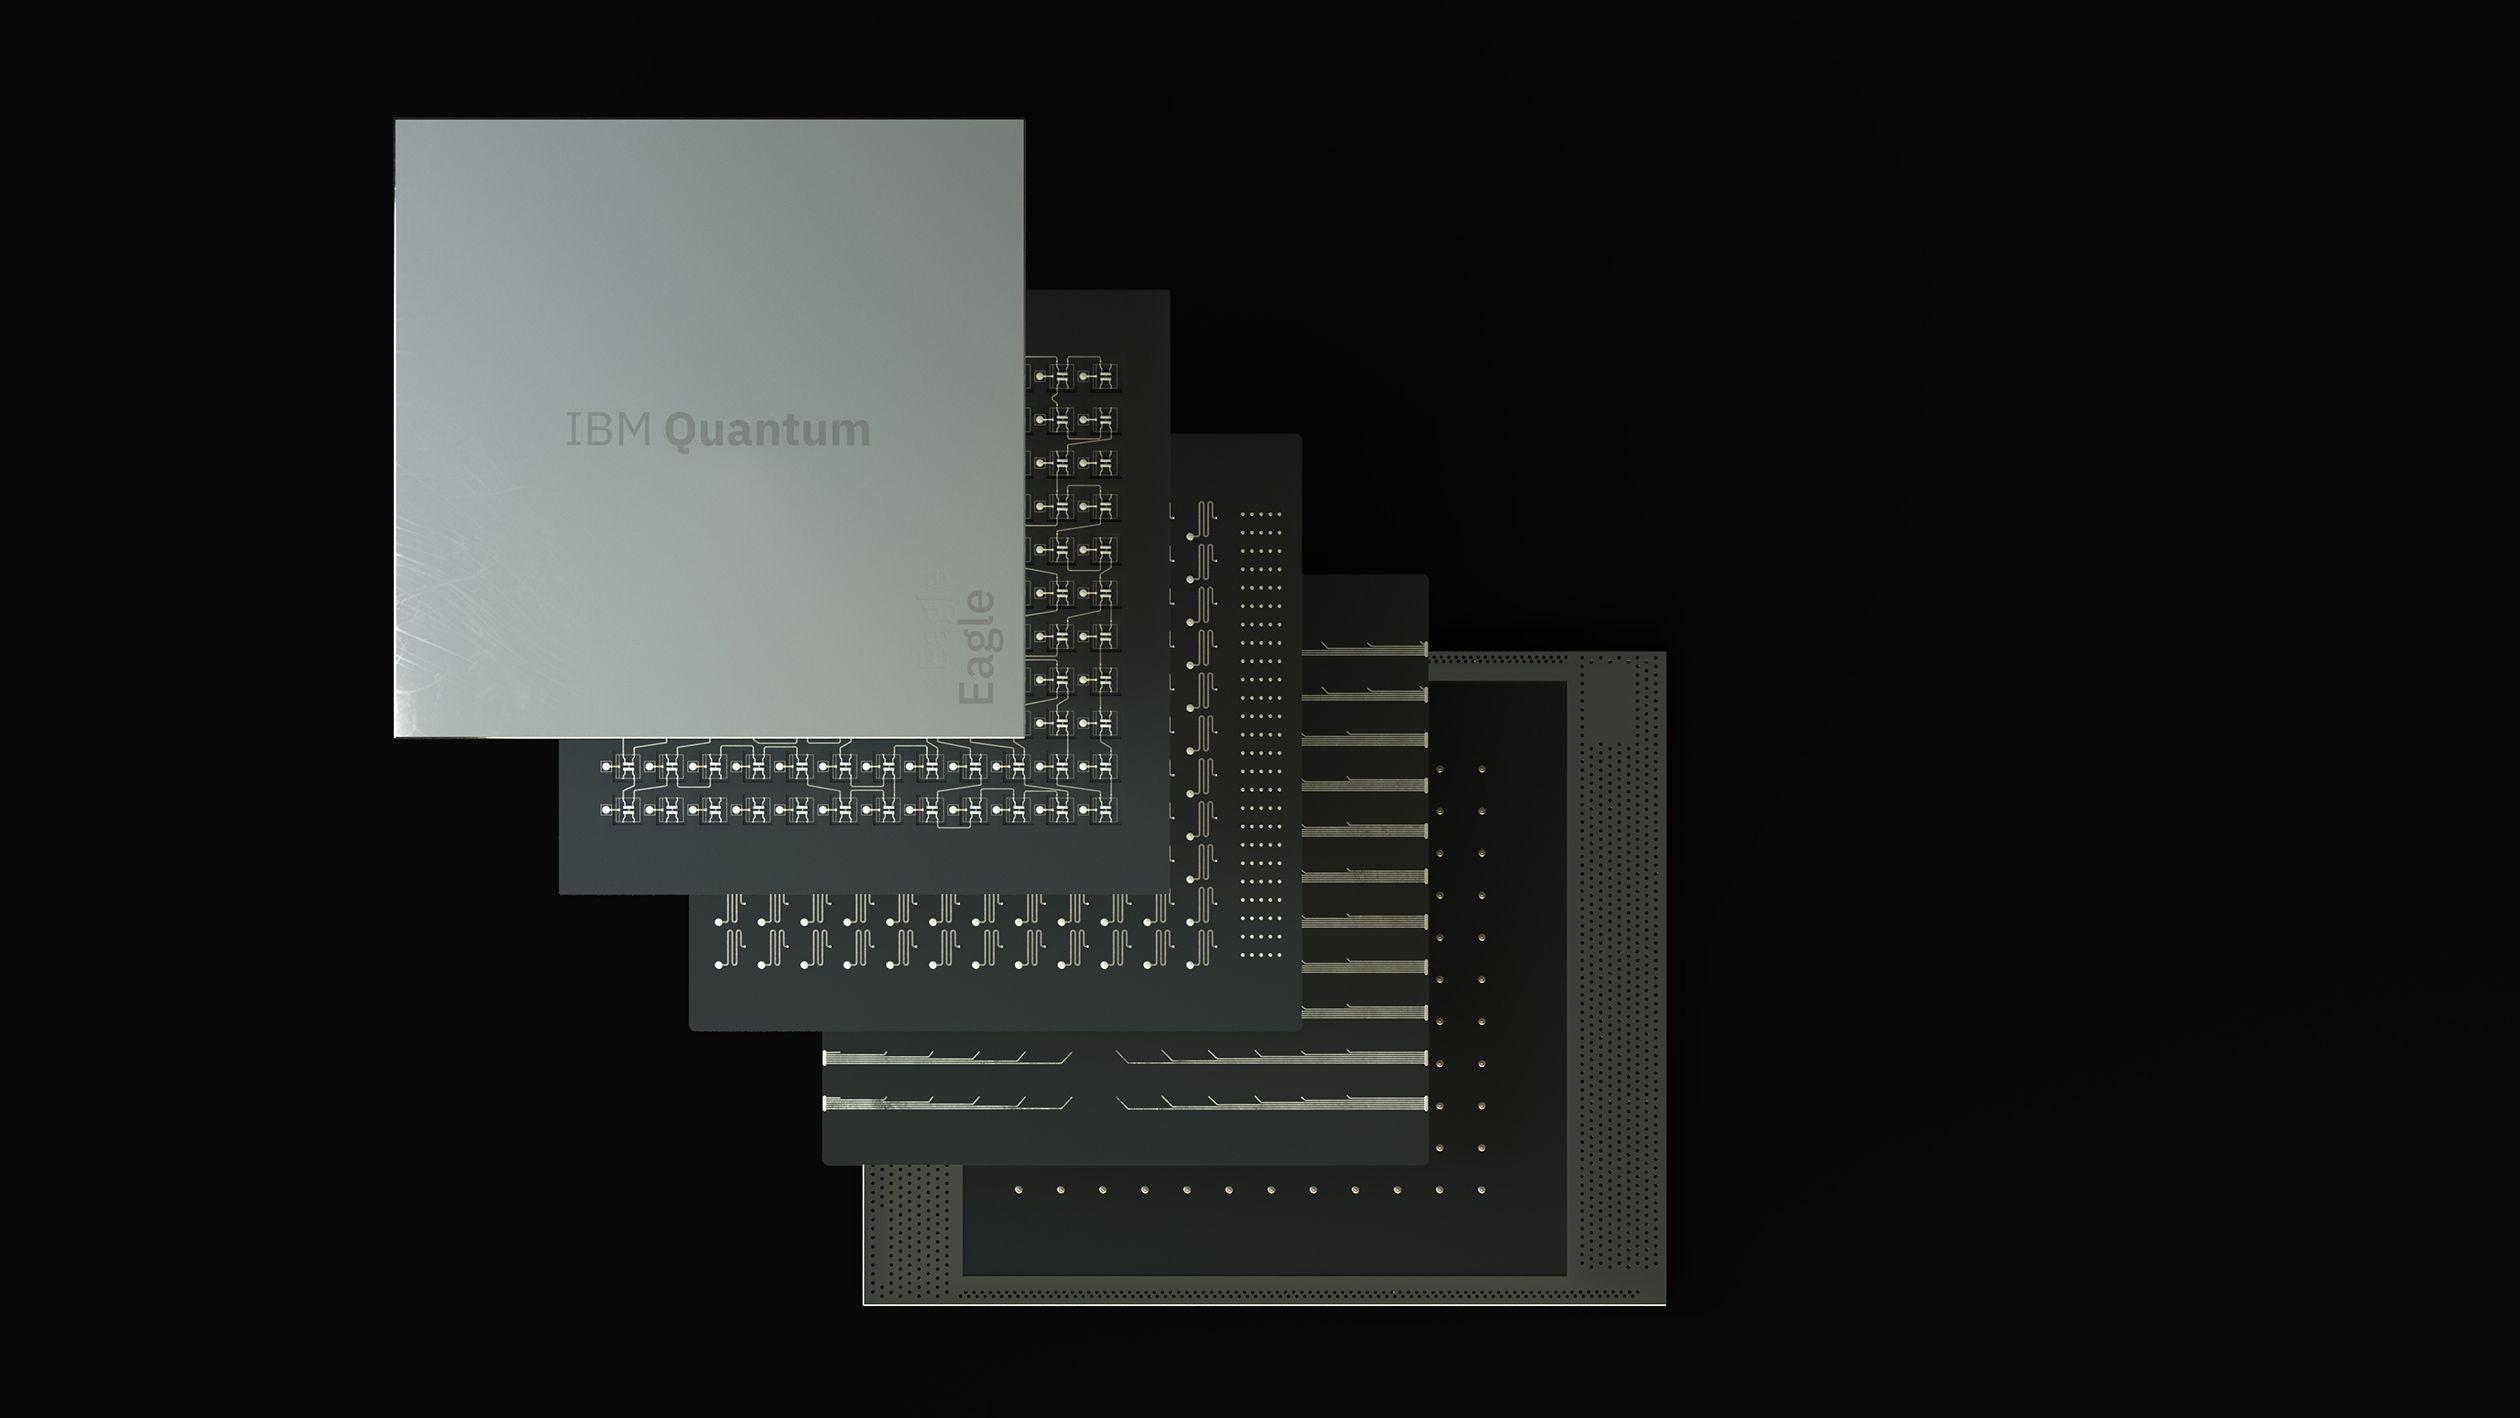 IBM Quantum's 127-qubit Eagle processor.